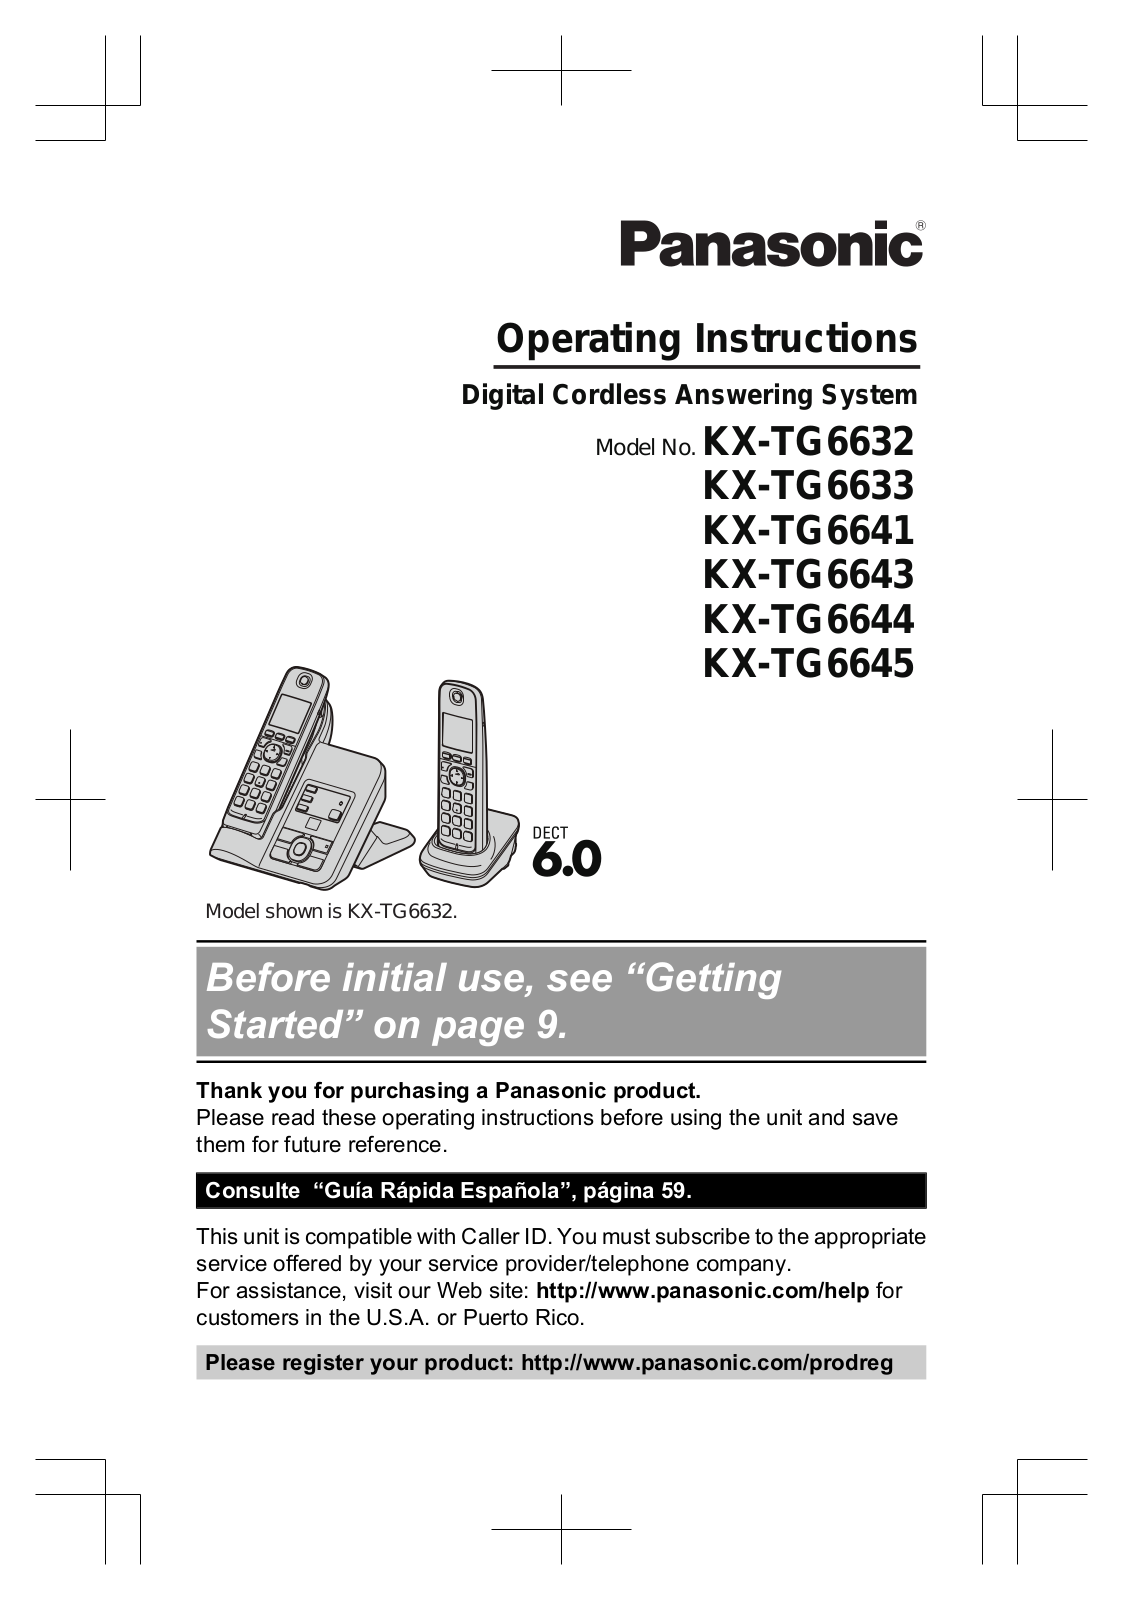 Panasonic KX-TG6643, KXTG6641B, KX-TG6645, KX-TG6643B, KX-TG6633 User Manual